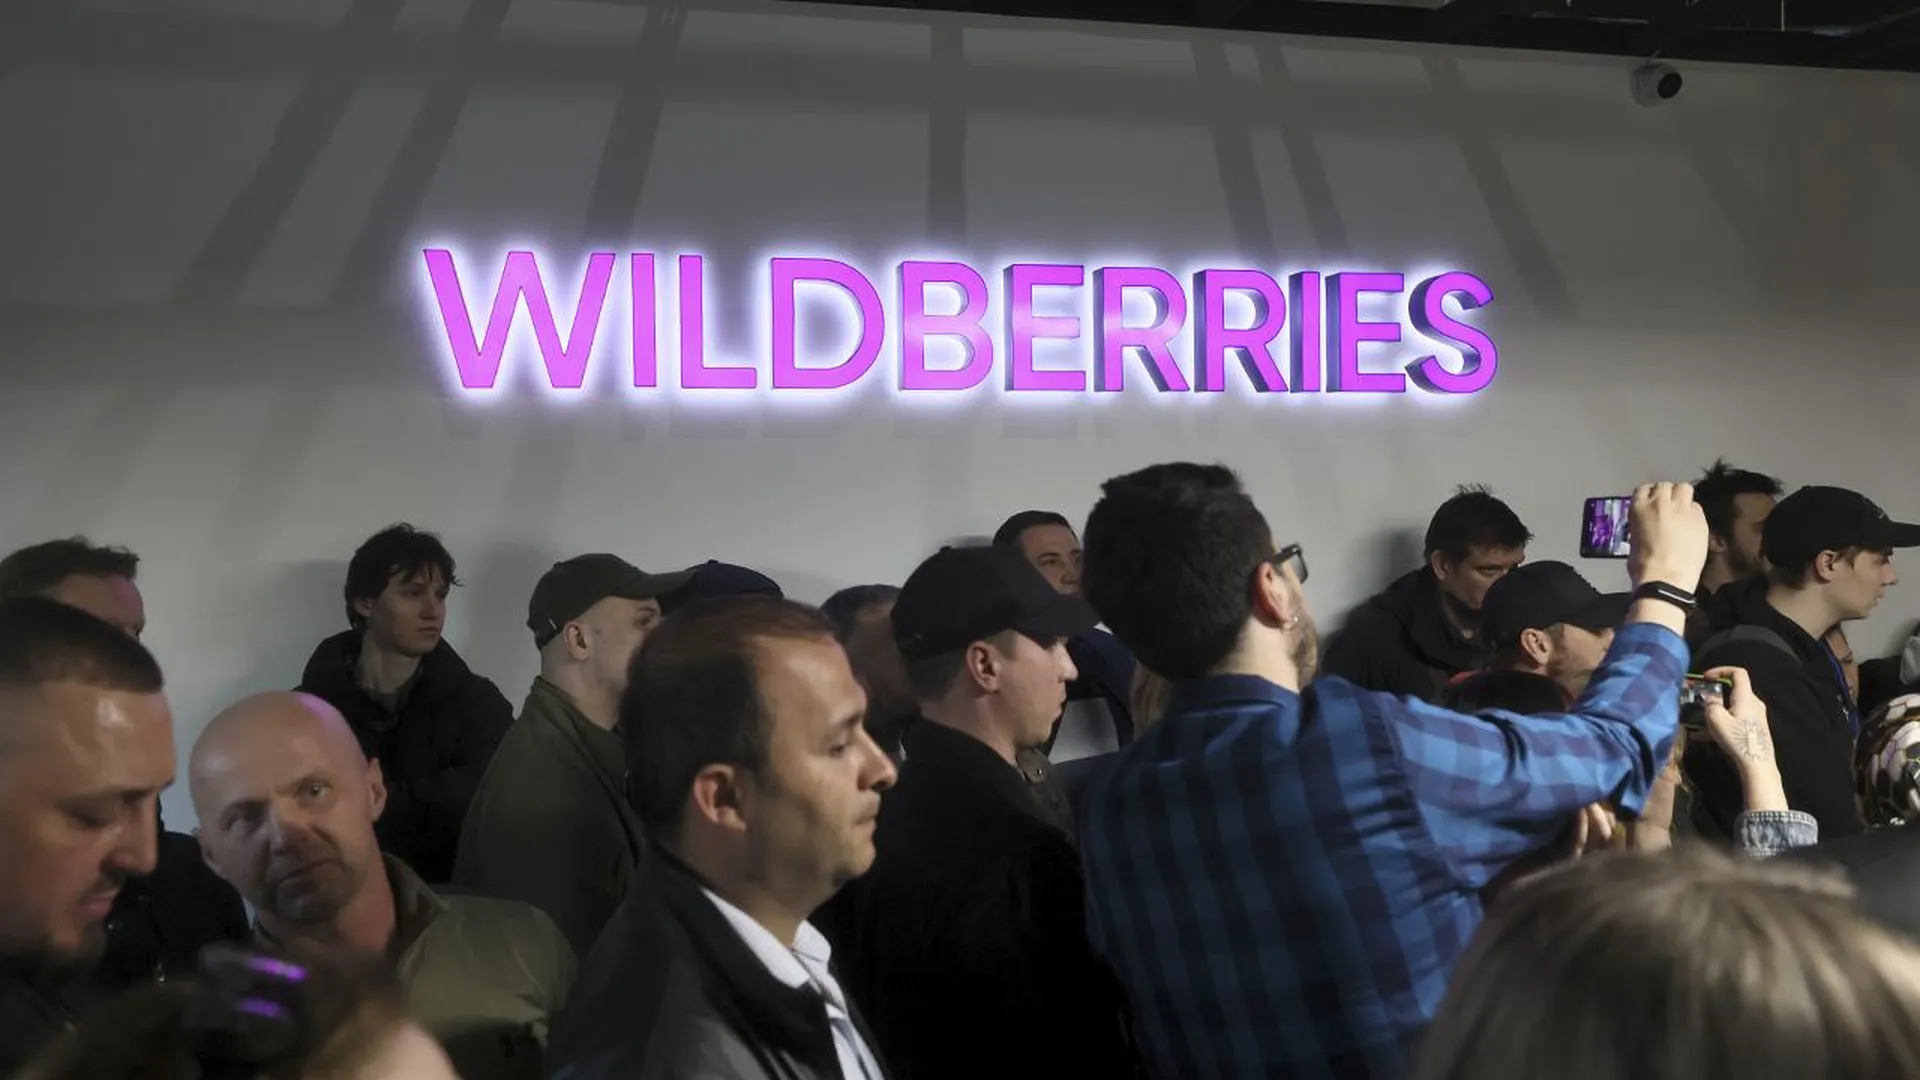 Правозащитник Волков назвал единственный способ урегулирования конфликта в Wildberries